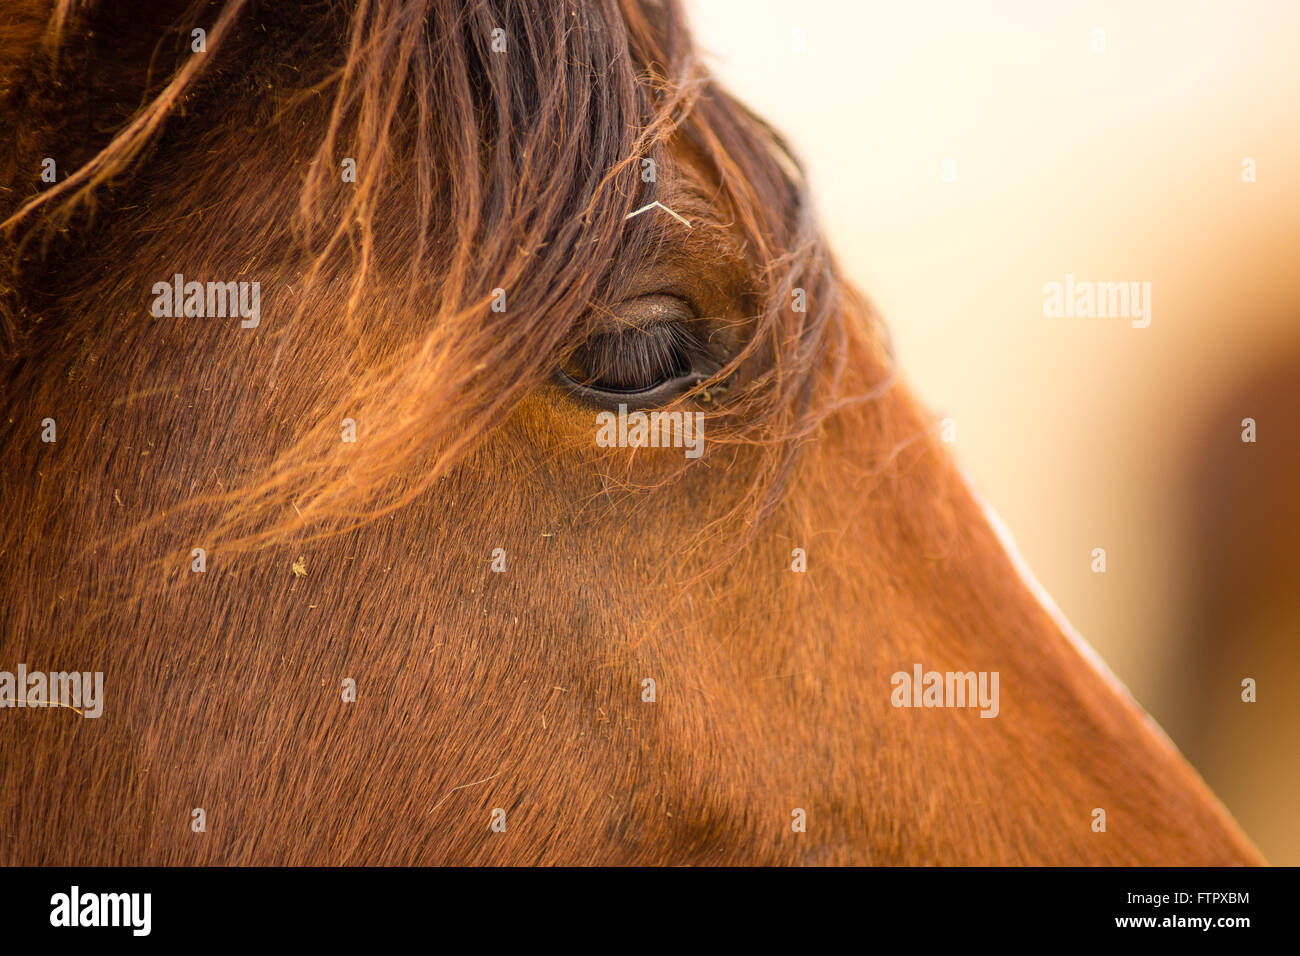 Wild Horse Face Portrait Oregon Bureau of Land Management Stock Photo